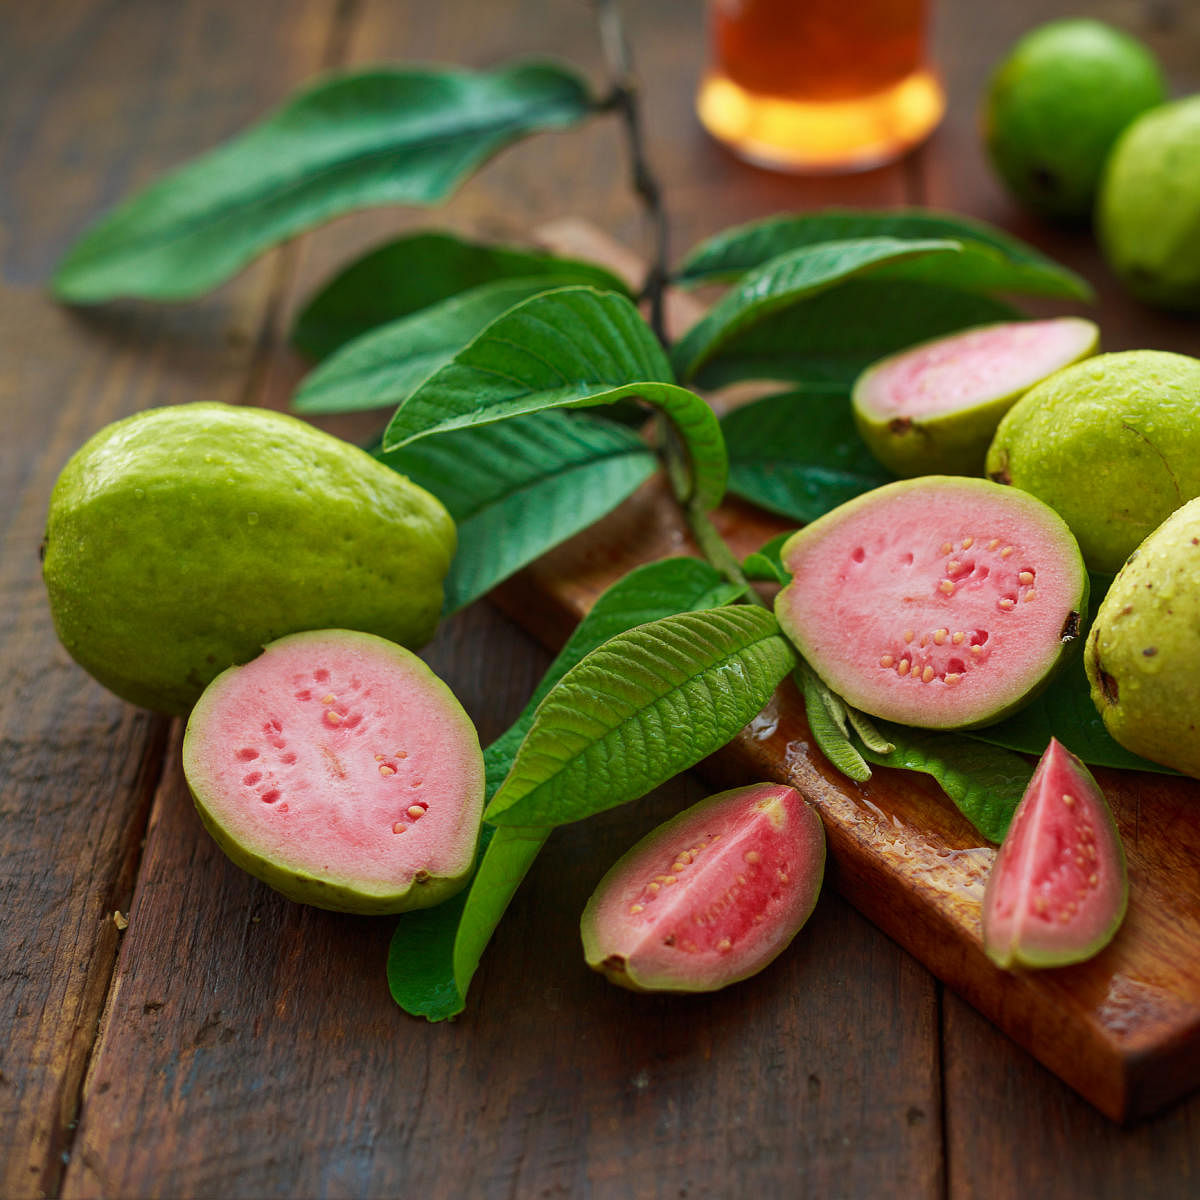 'Beleaf' in guava